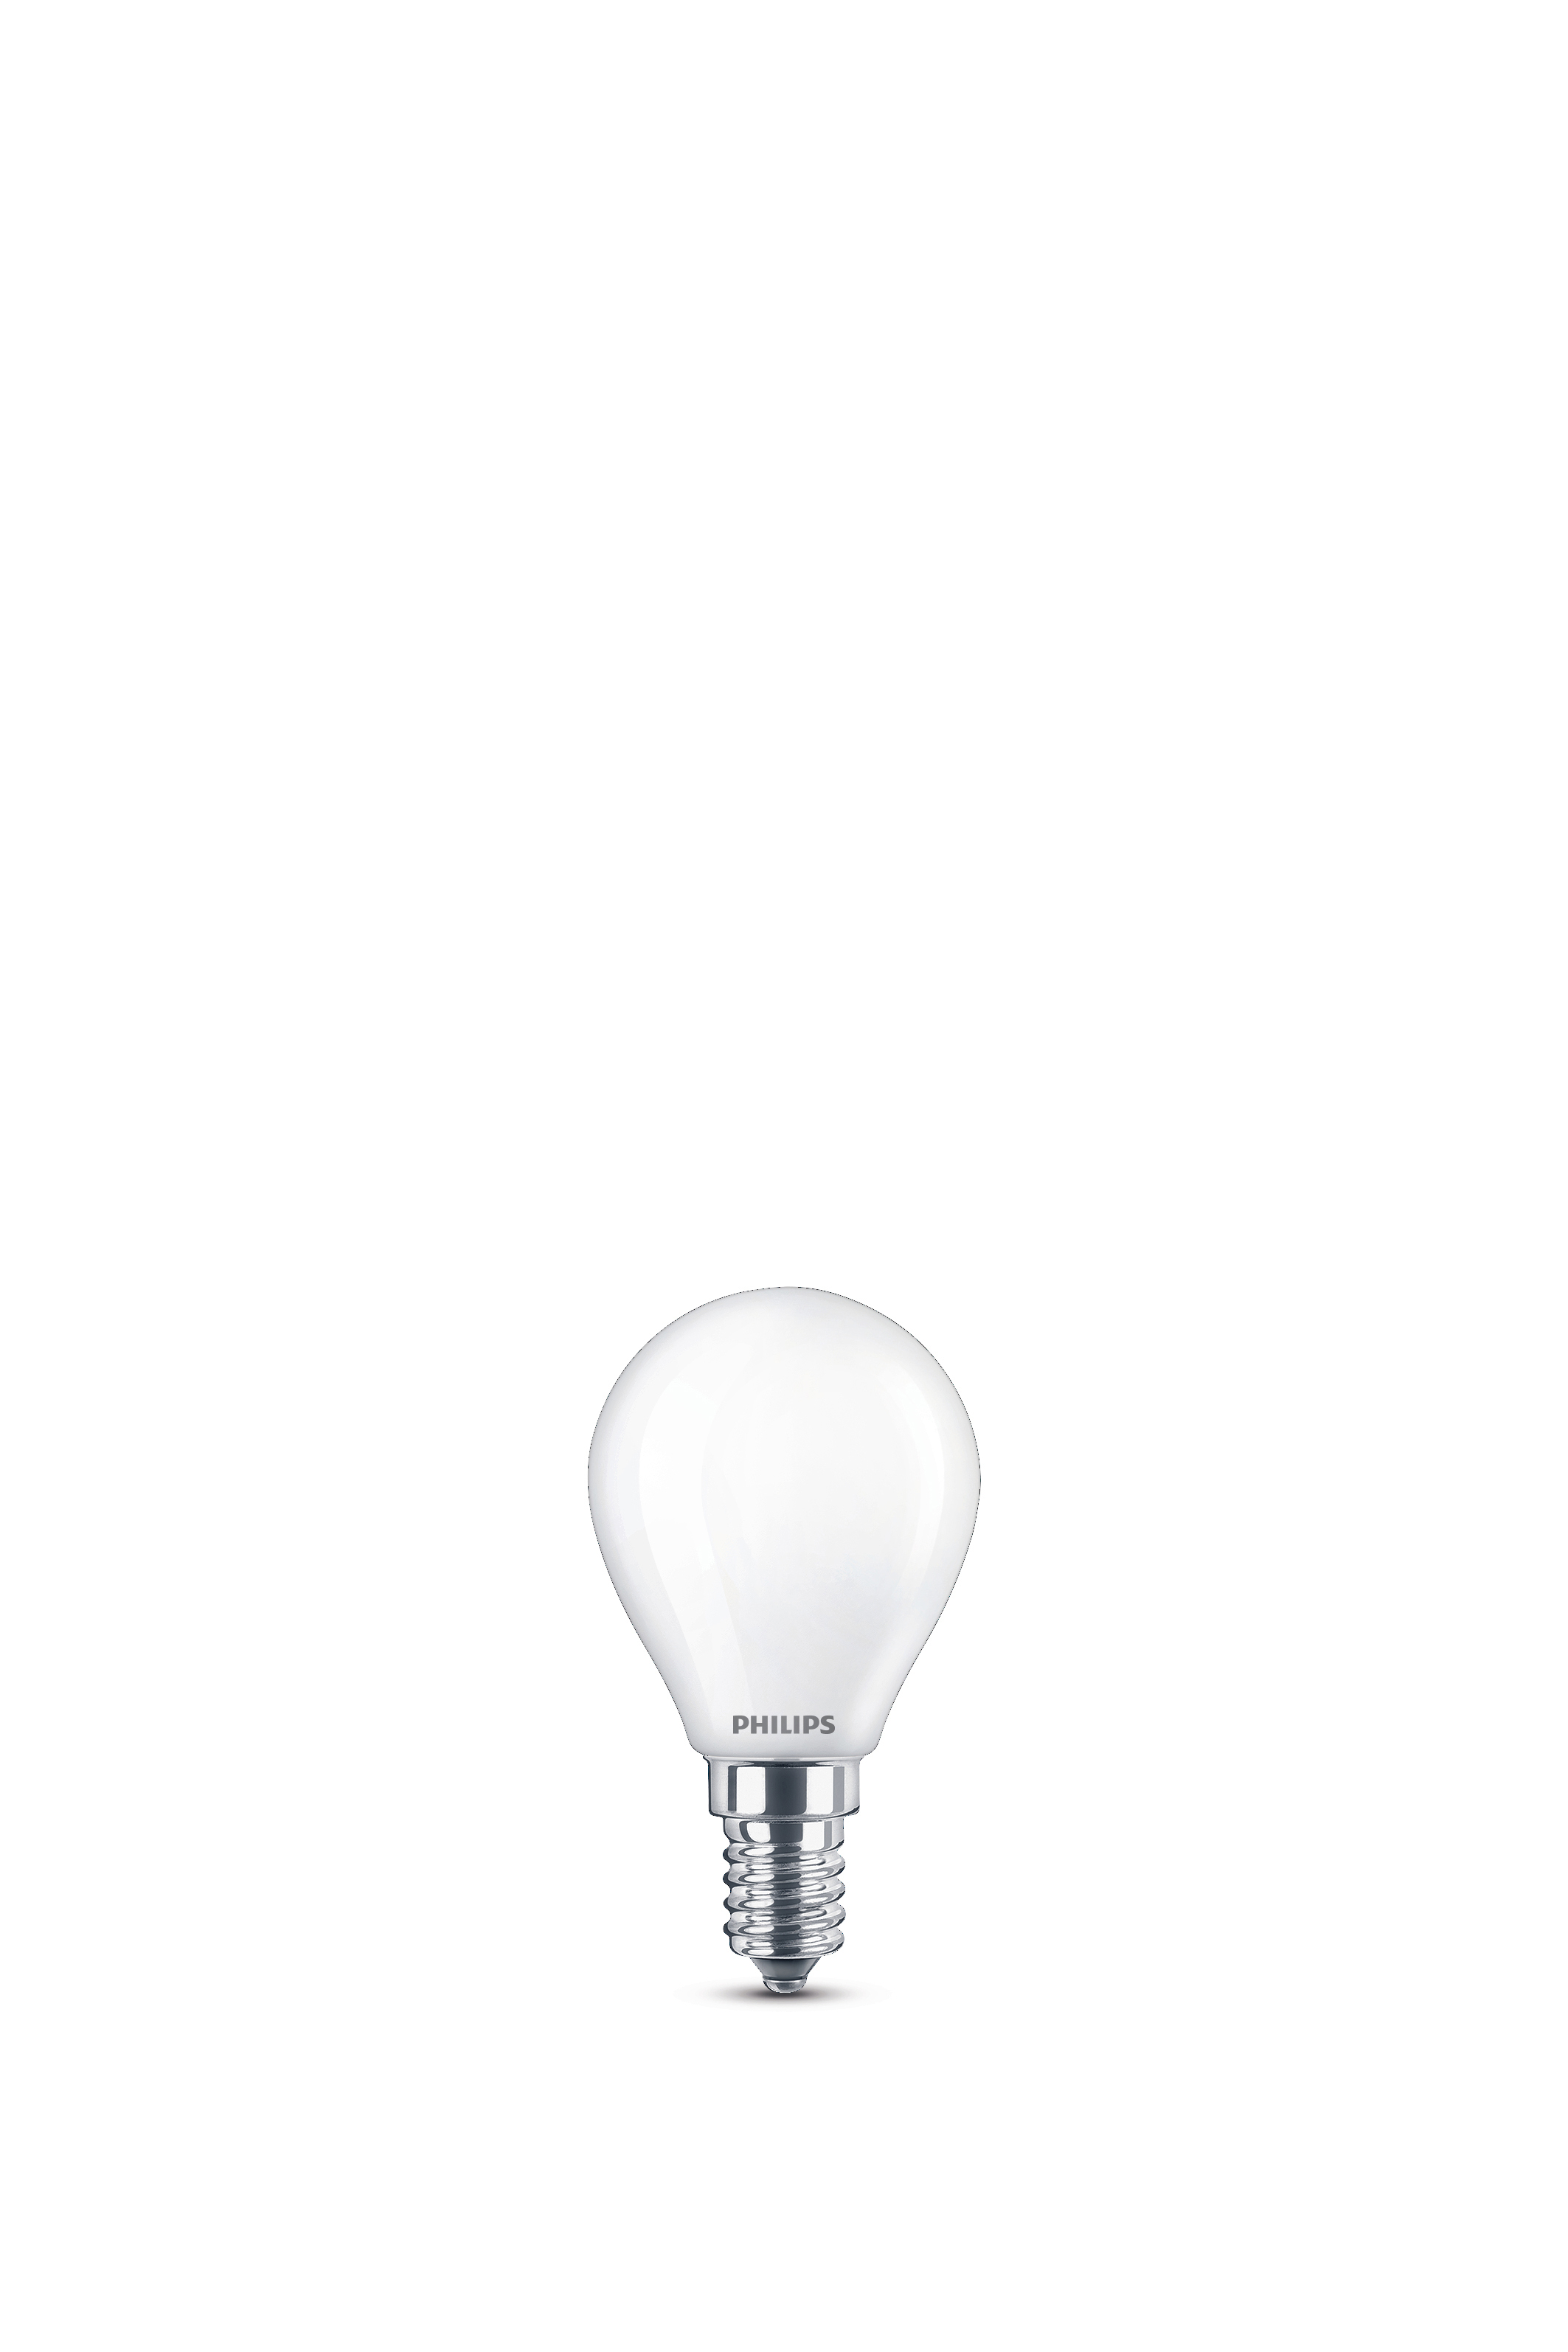 PHILIPS LEDclassic Lampe warmweiß Lampe LED 40W ersetzt